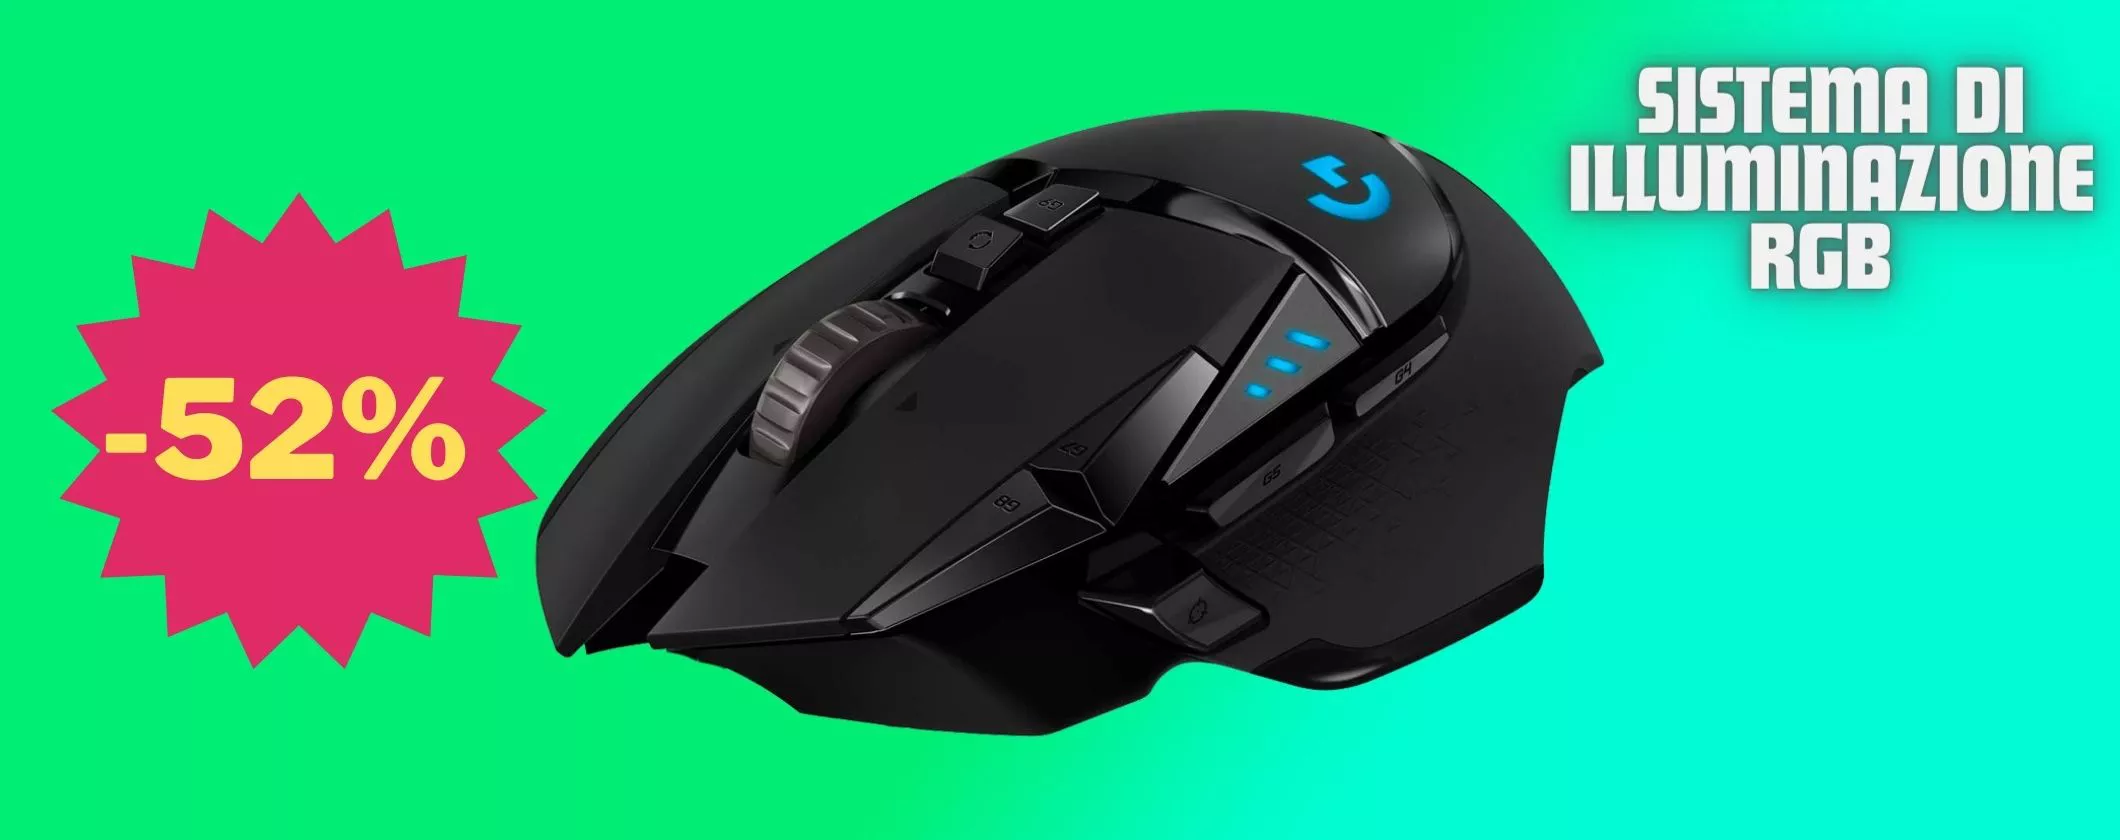 Logitech G502: ecco il miglior mouse in OFFERTA